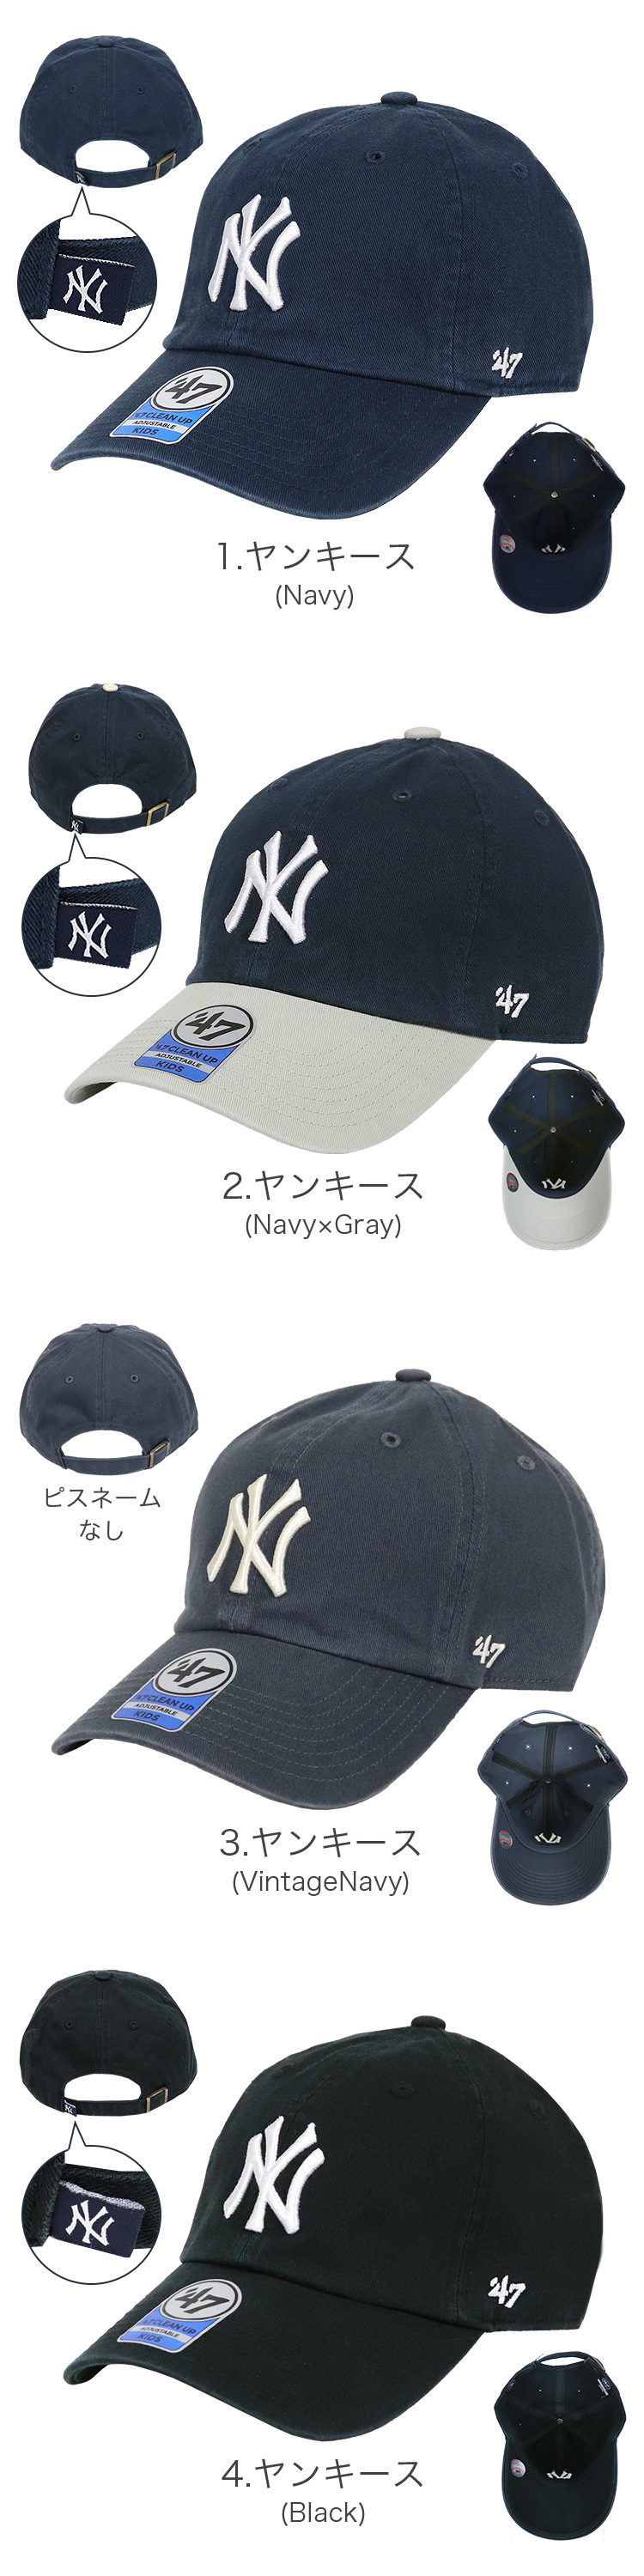 47 キャップ キッズ メジャーリーグ 子供用 帽子 ニューヨーク 